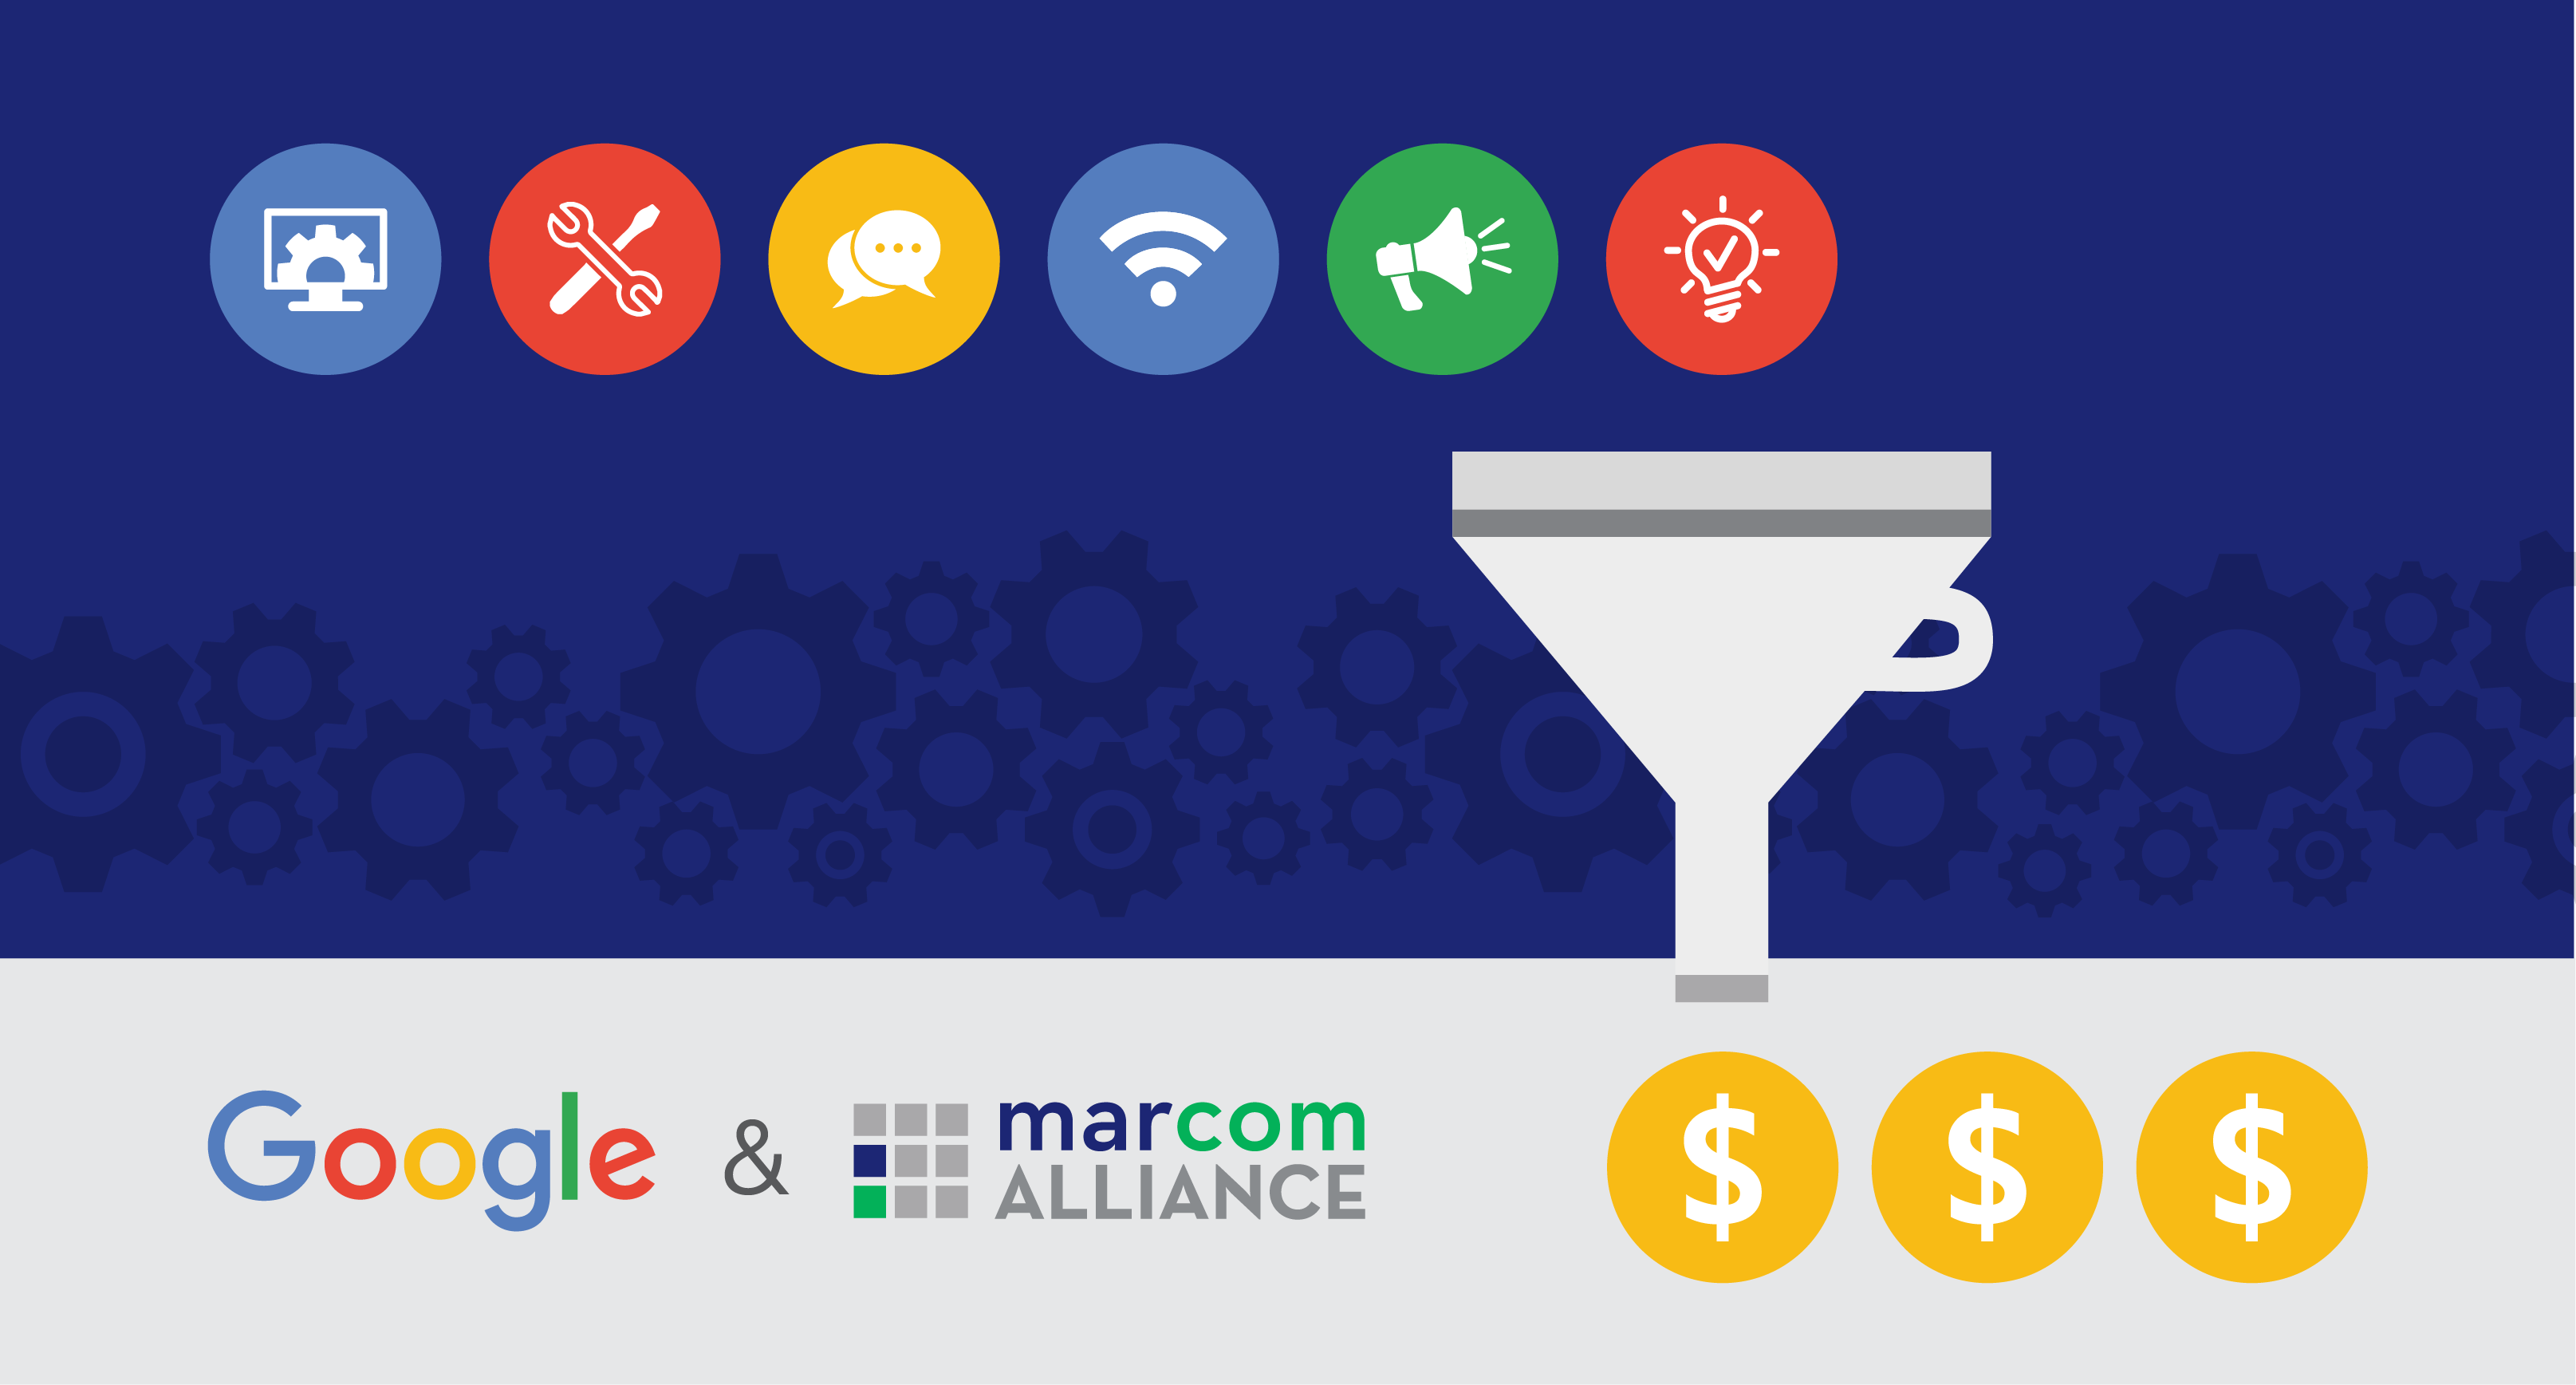 Marcom Alliance Google Join Forces For Free Digital Marketing Workshop